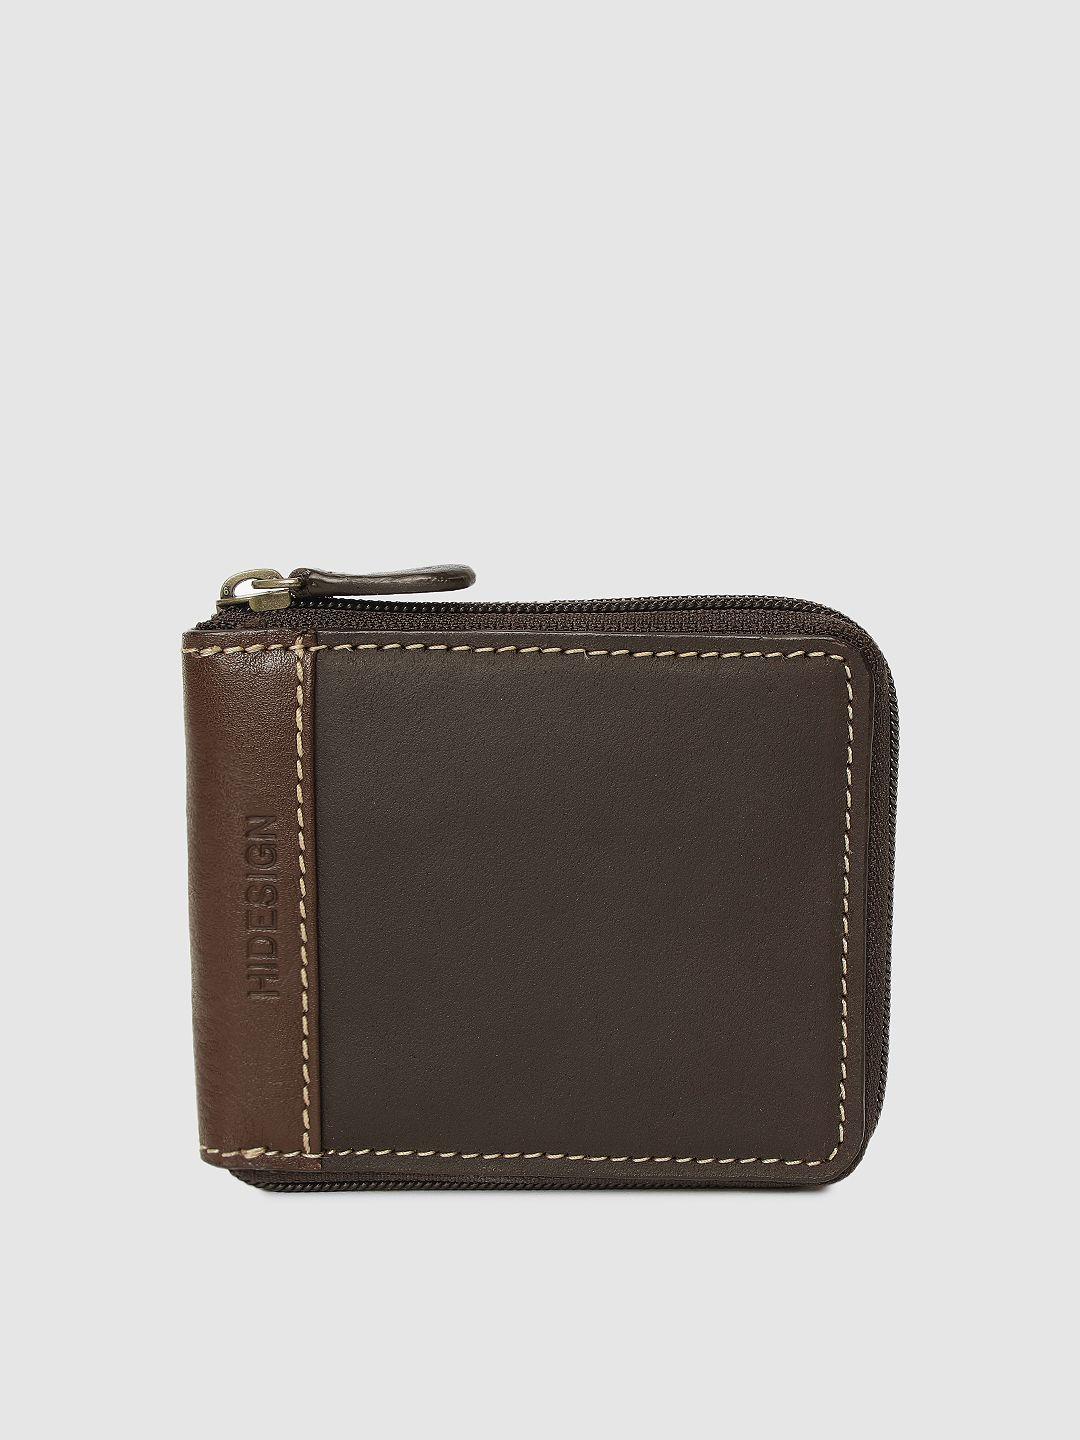 hidesign men brown solid zip around wallet